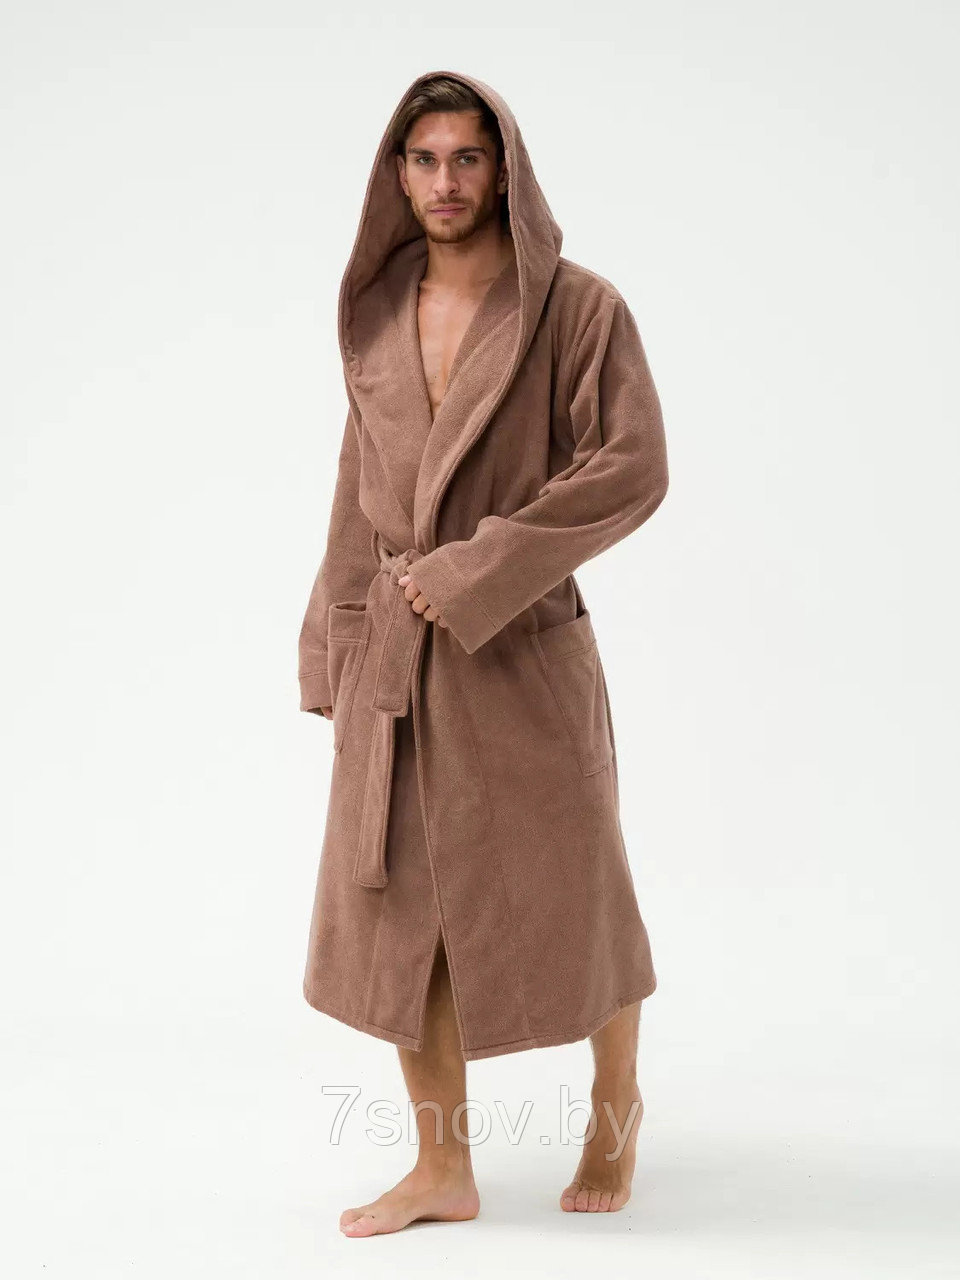 Мужской махровый халат размер 50-52 коричневый с капюшоном